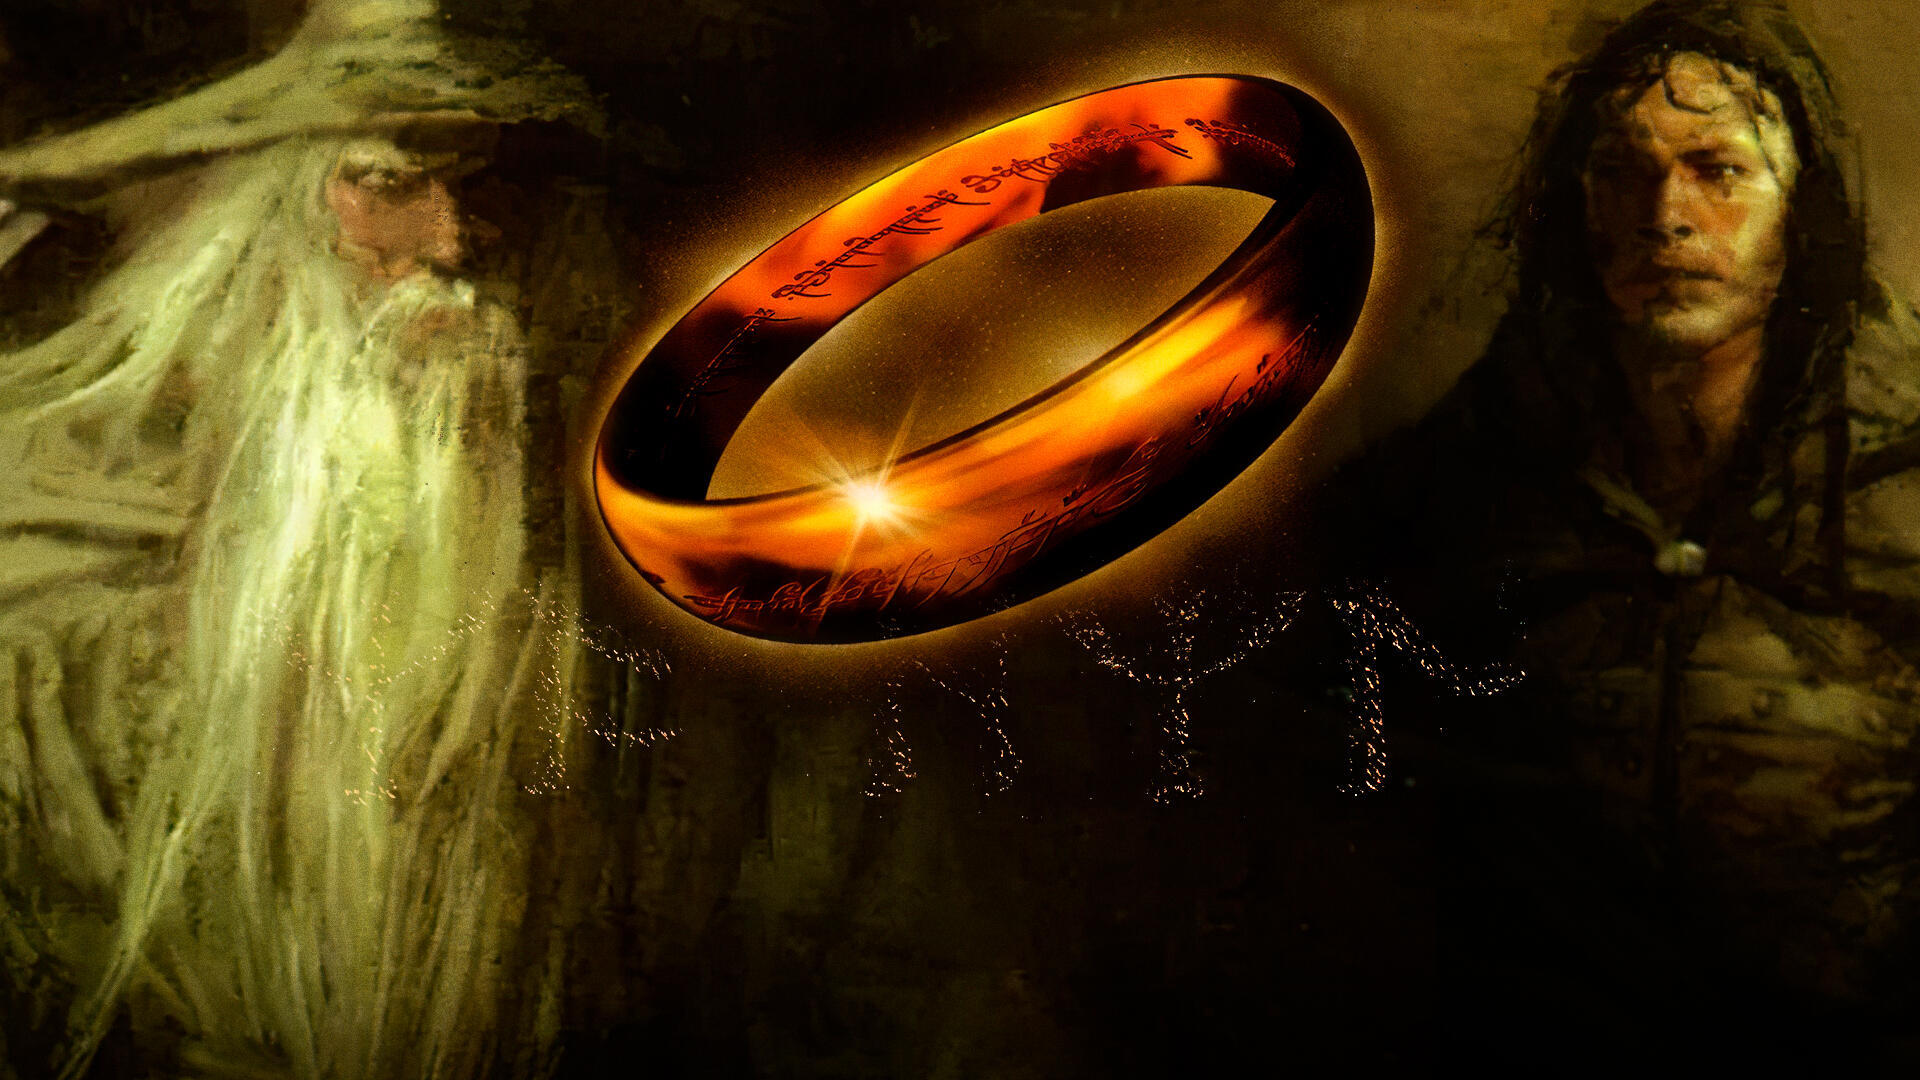 'El Señor de los Anillos: La comunidad del anillo' es el juego más fiel a J.R.R. Tolkien y uno de los más olvidados